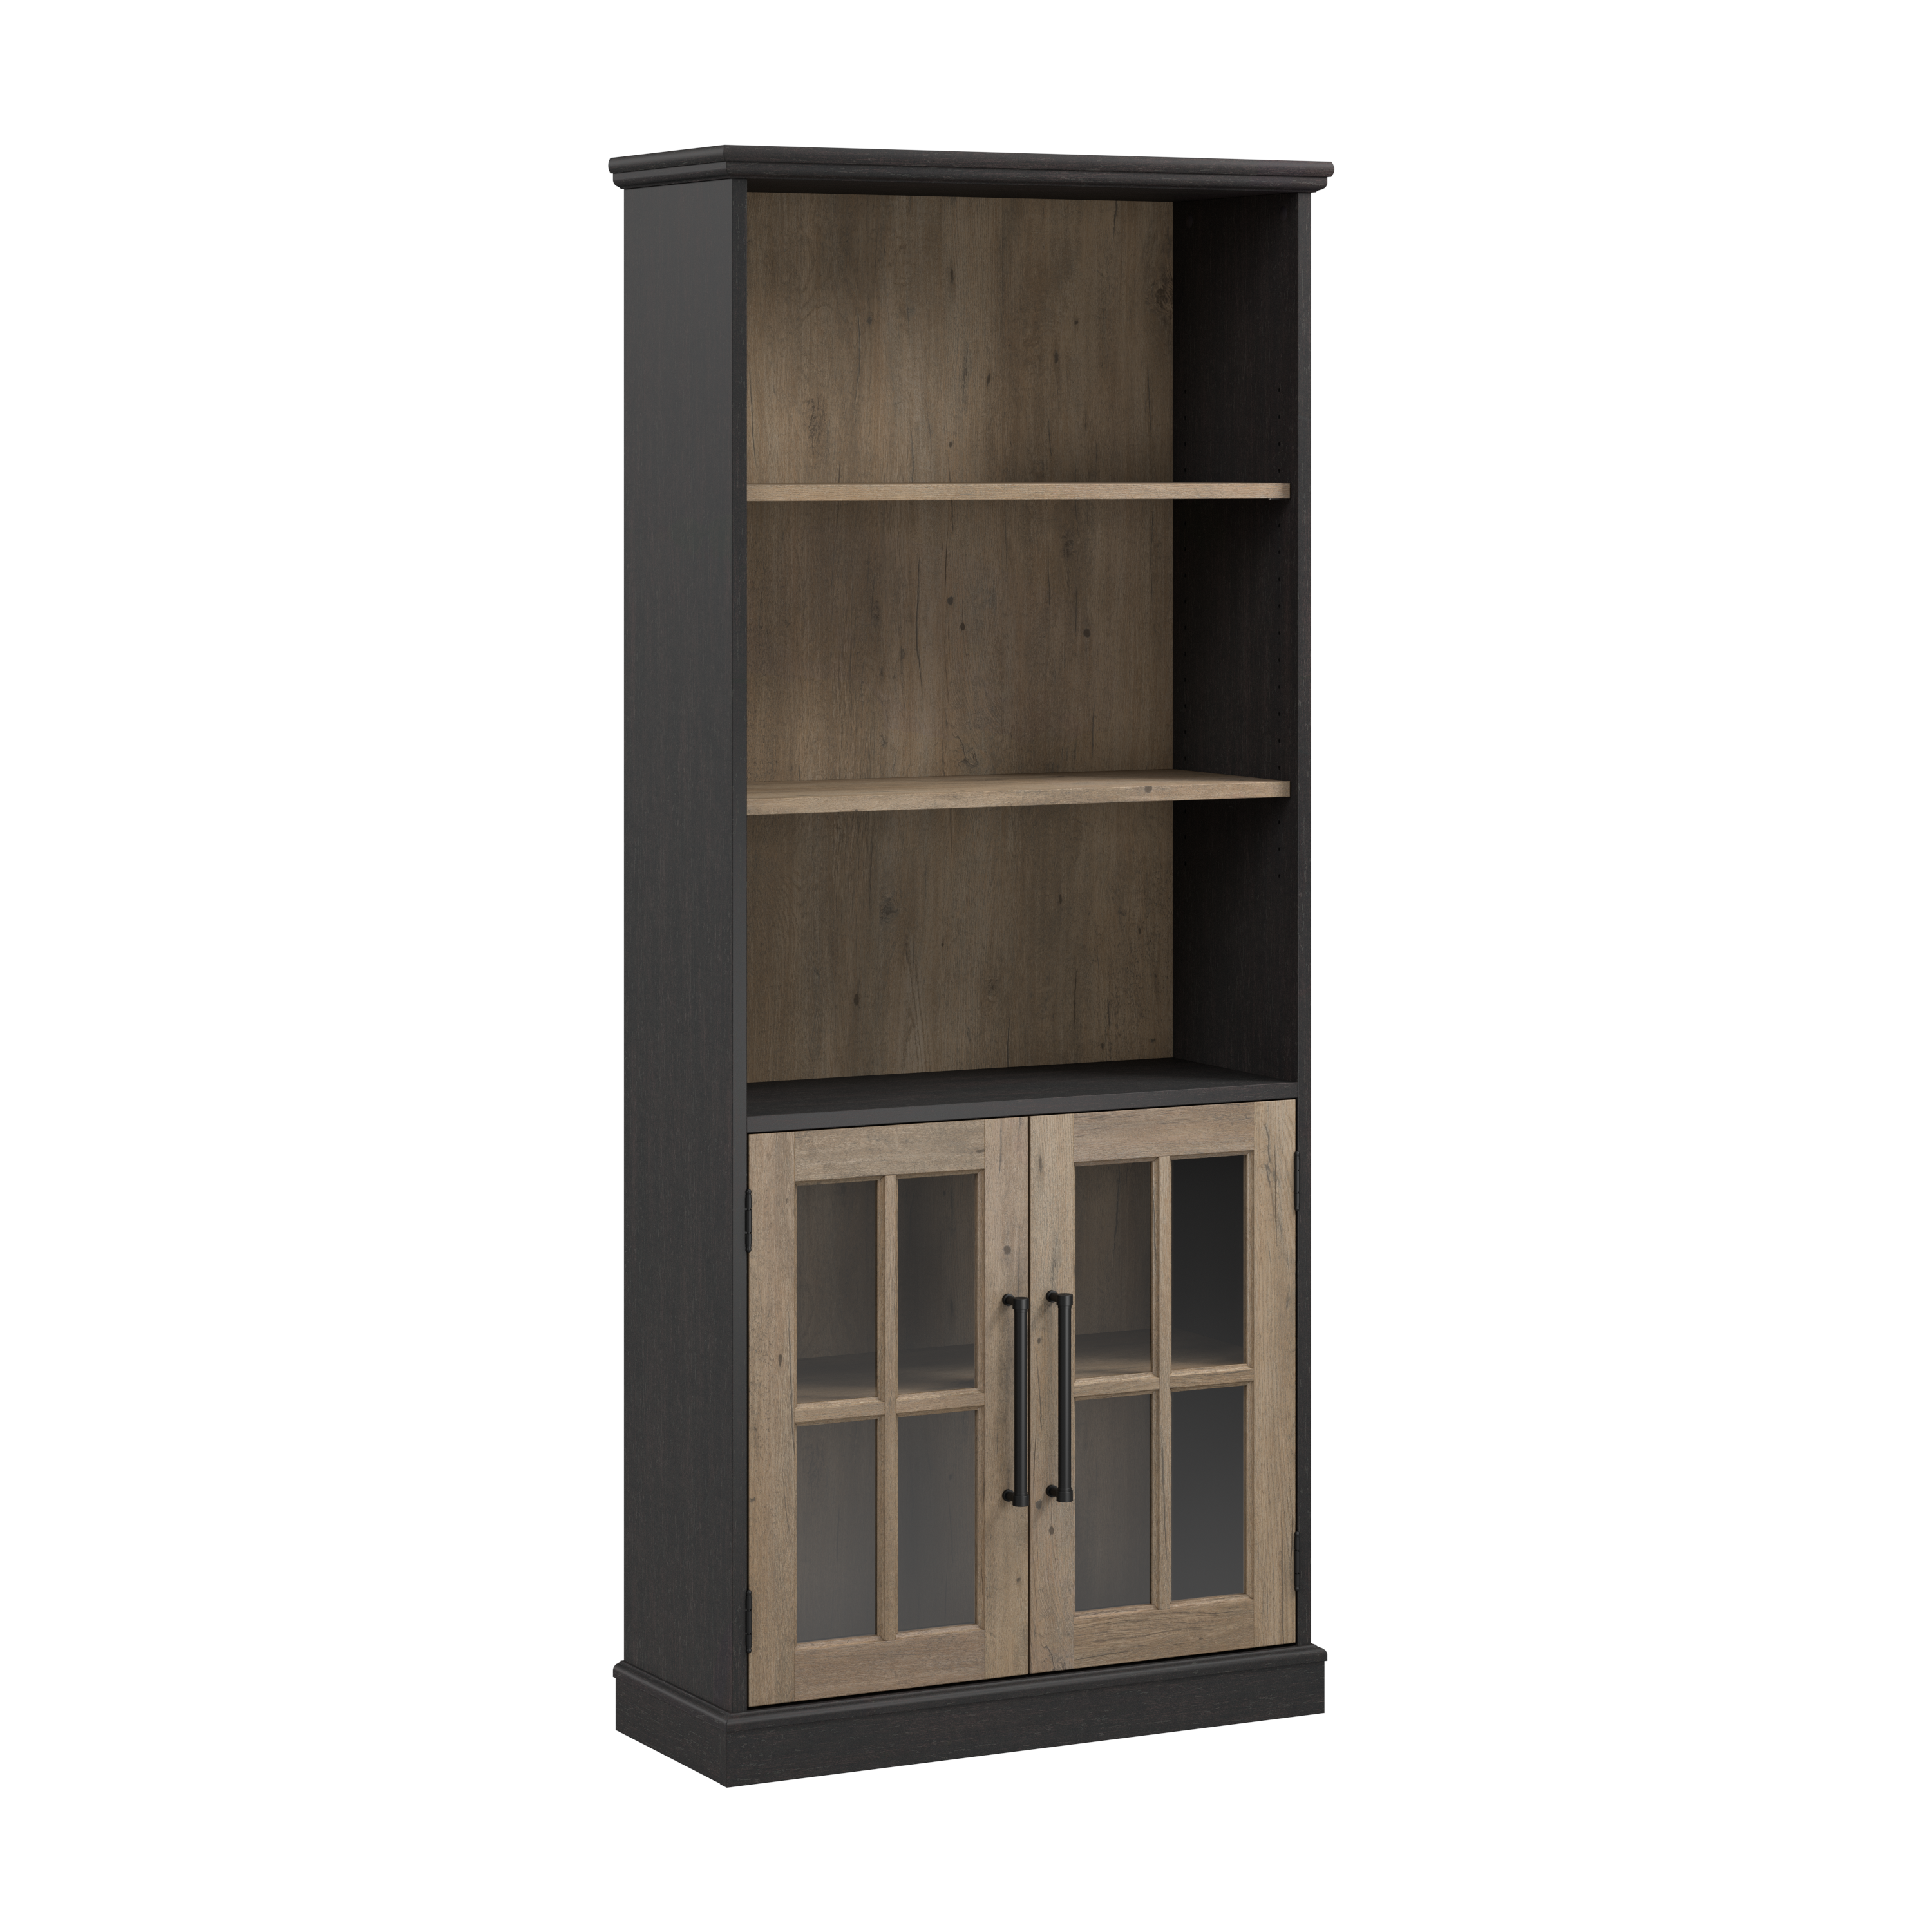 Shop Bush Furniture Westbrook 5 Shelf Bookcase with Glass Doors 02 WBB132V2R-03 #color_vintage black/restored tan hickory